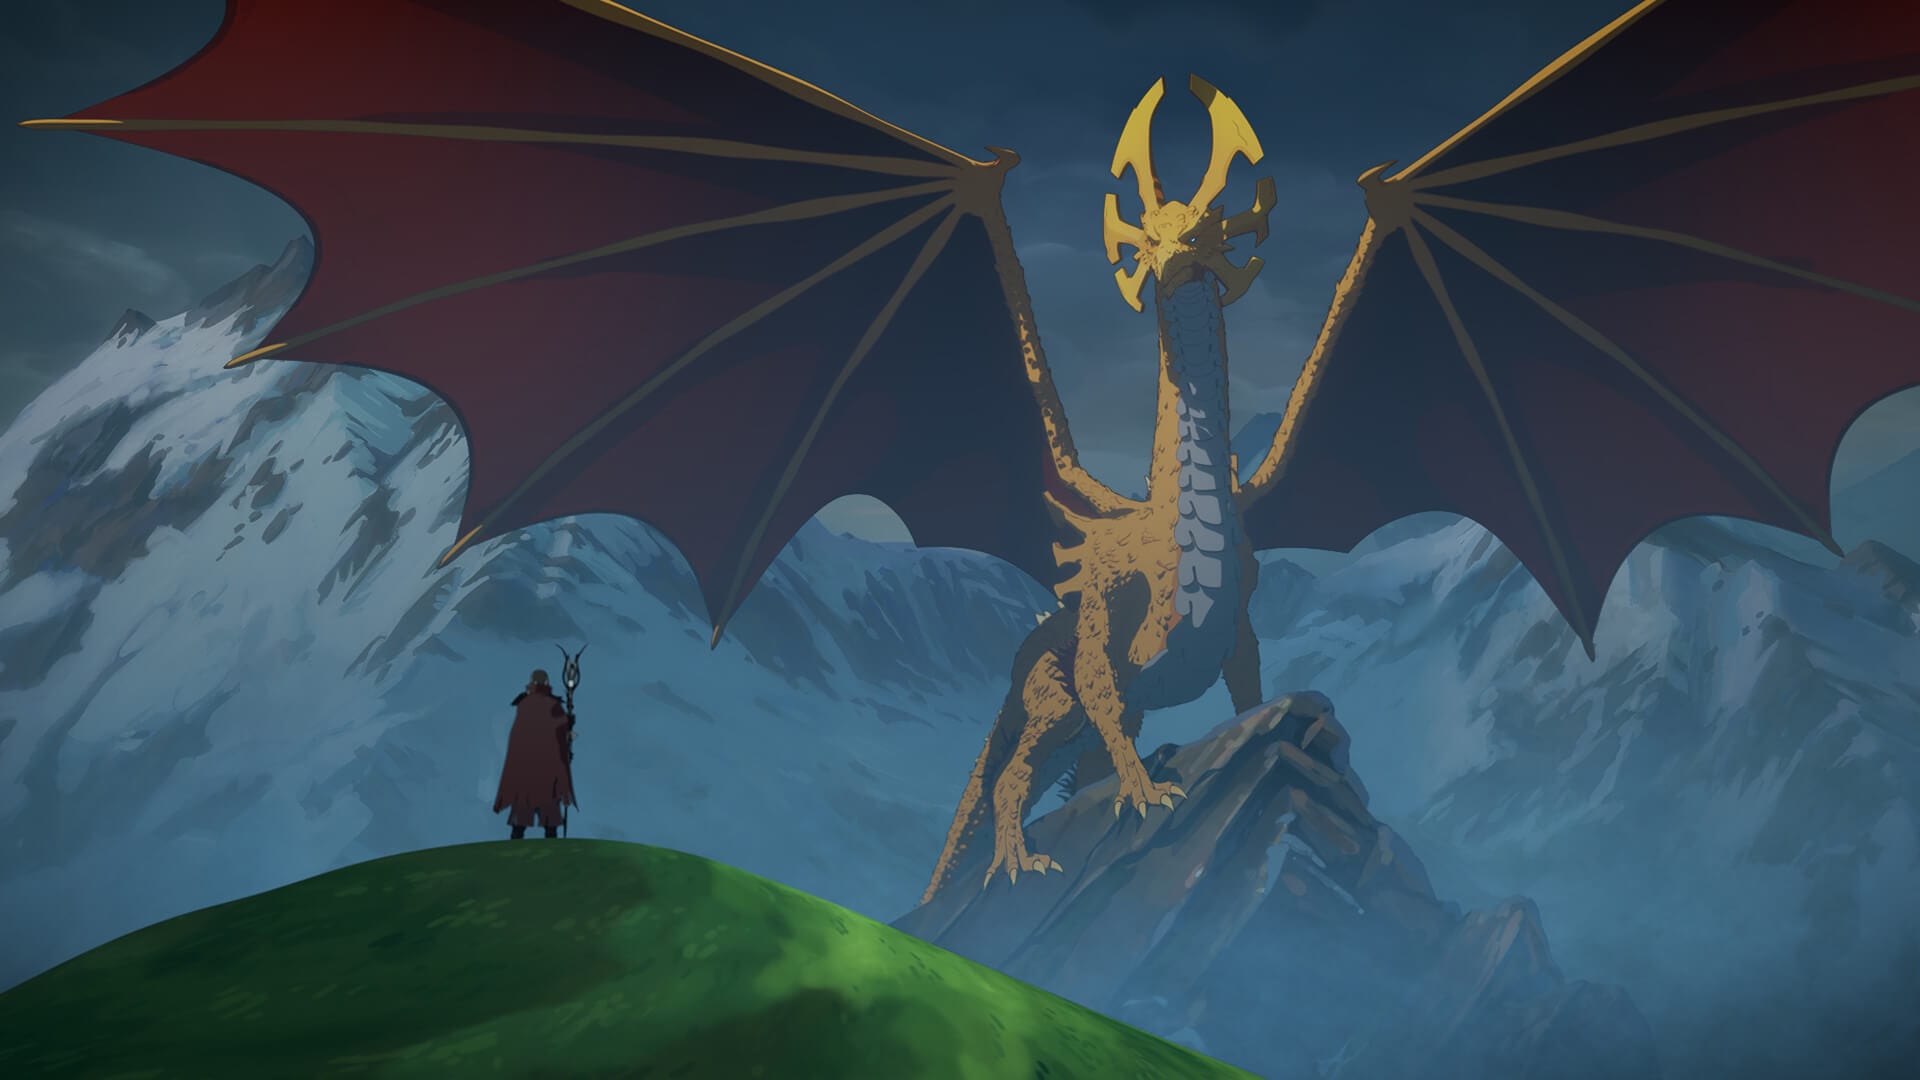 The Dragon Prince Wallpapers